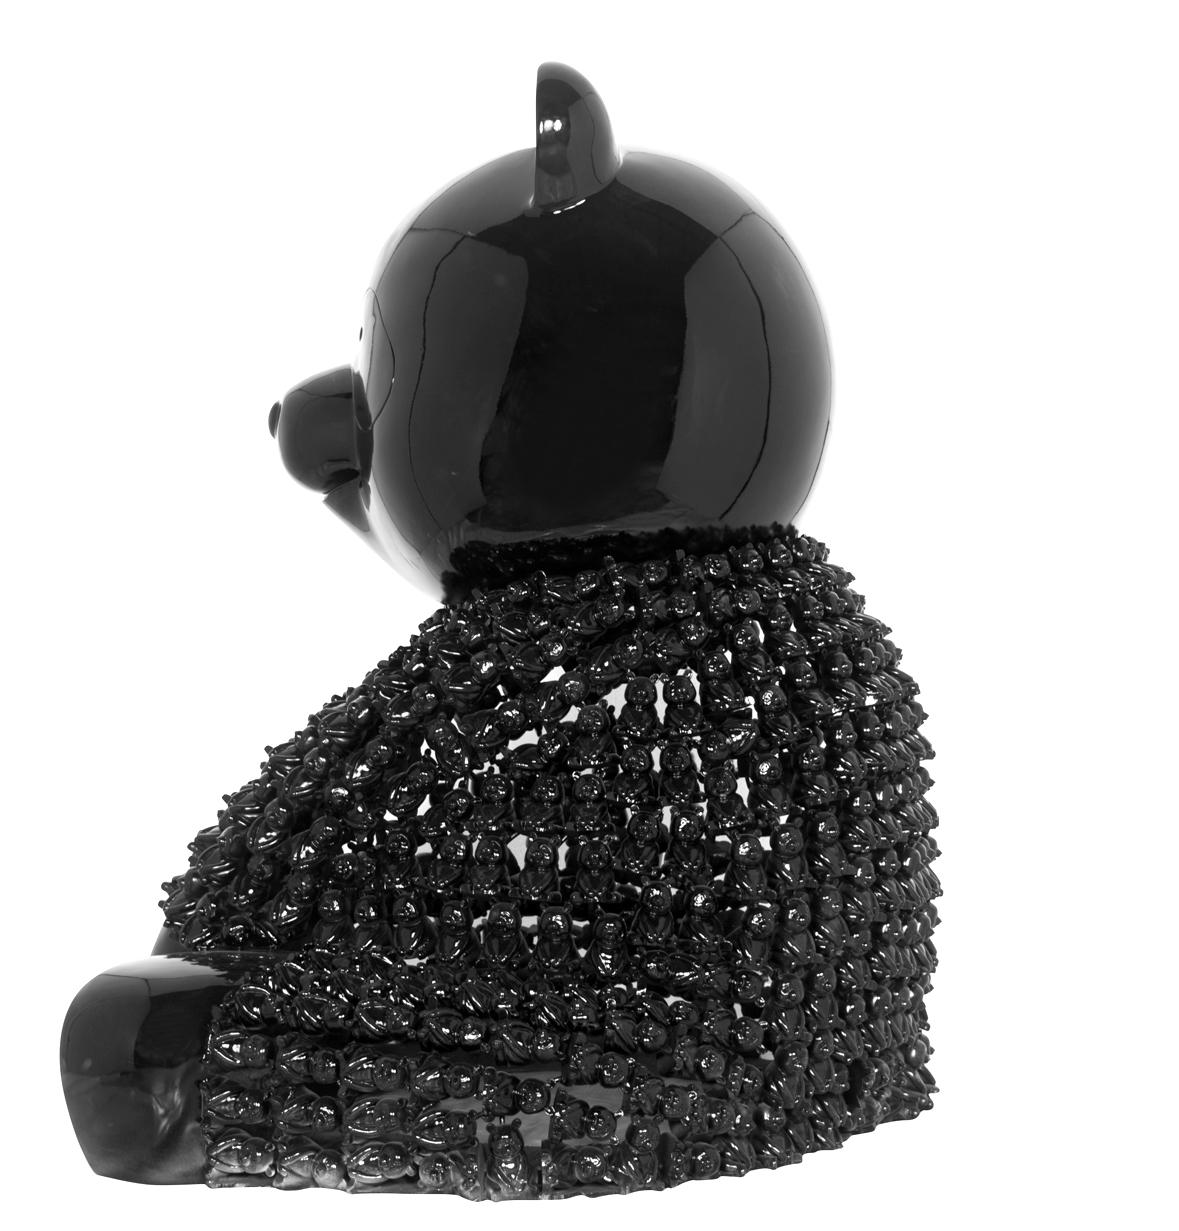 Pandason's Black : Ein lilliputianisches Ballett Chromatischer Marvels (Zeitgenössisch), Sculpture, von HIRO ANDO